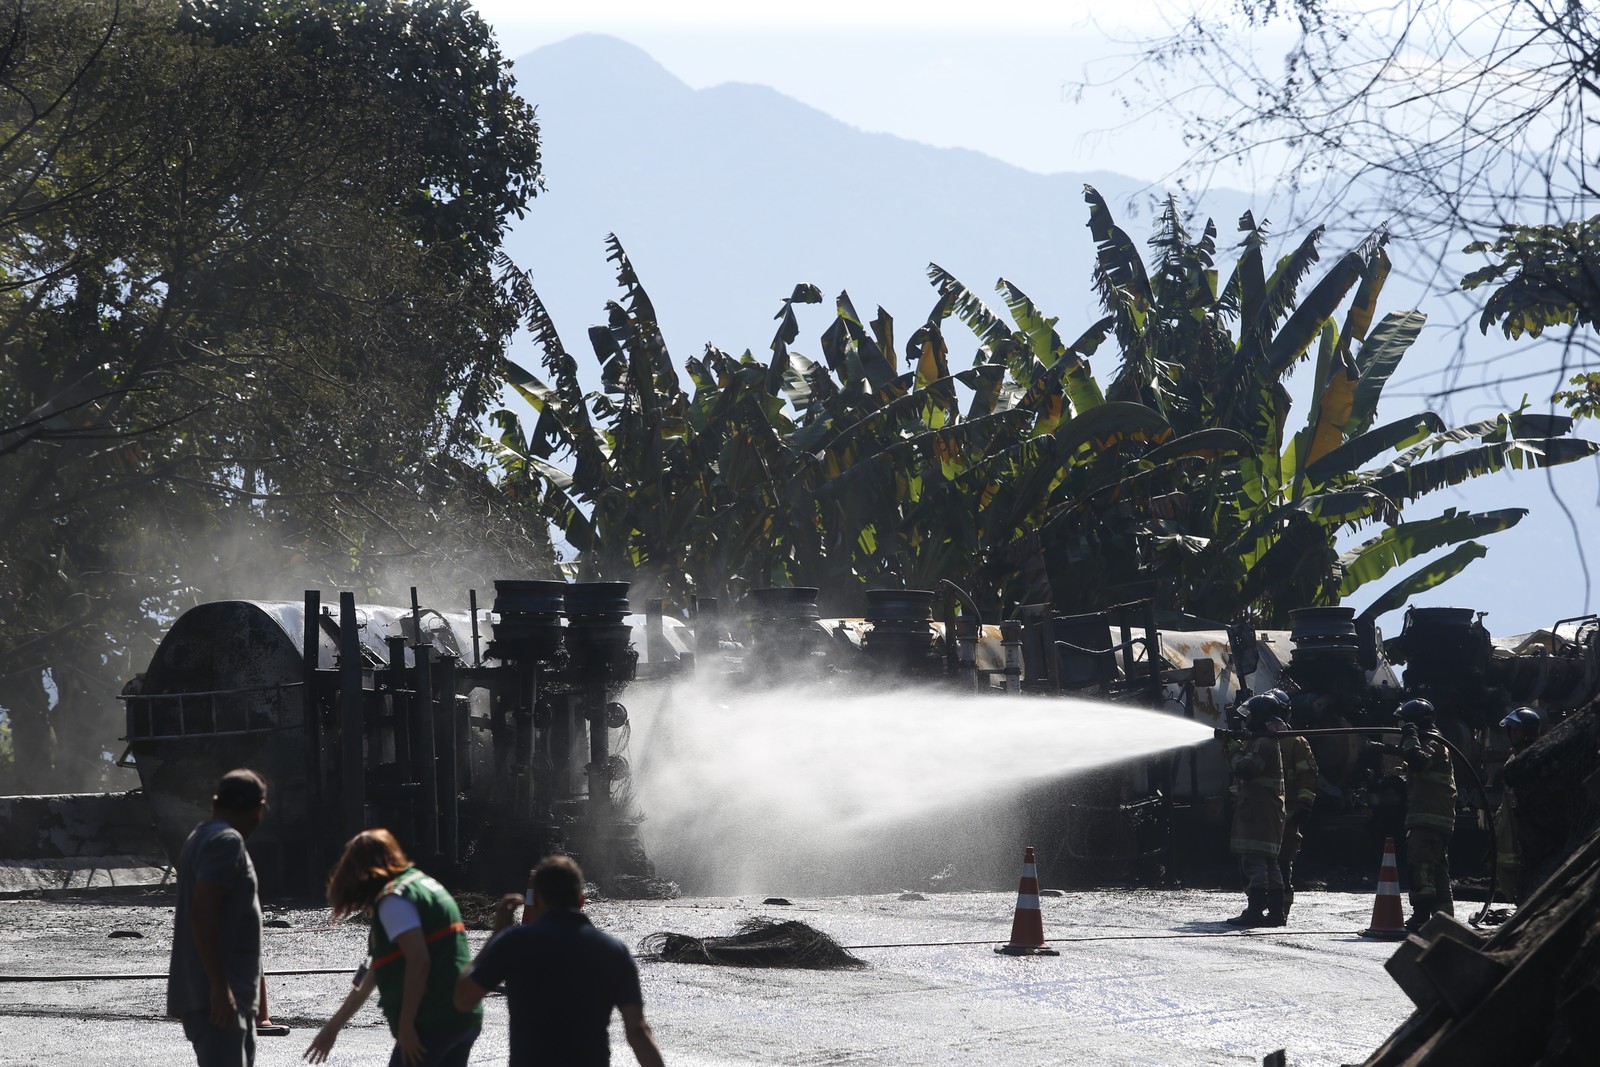  Bombeiros estão no local fazendo o resfriamento da carreta para evitar novas explosões, já que o segundo tanque do caminhão modelo bitrem ainda está com combustível. — Foto: Fabiano Rocha / Agência O Globo